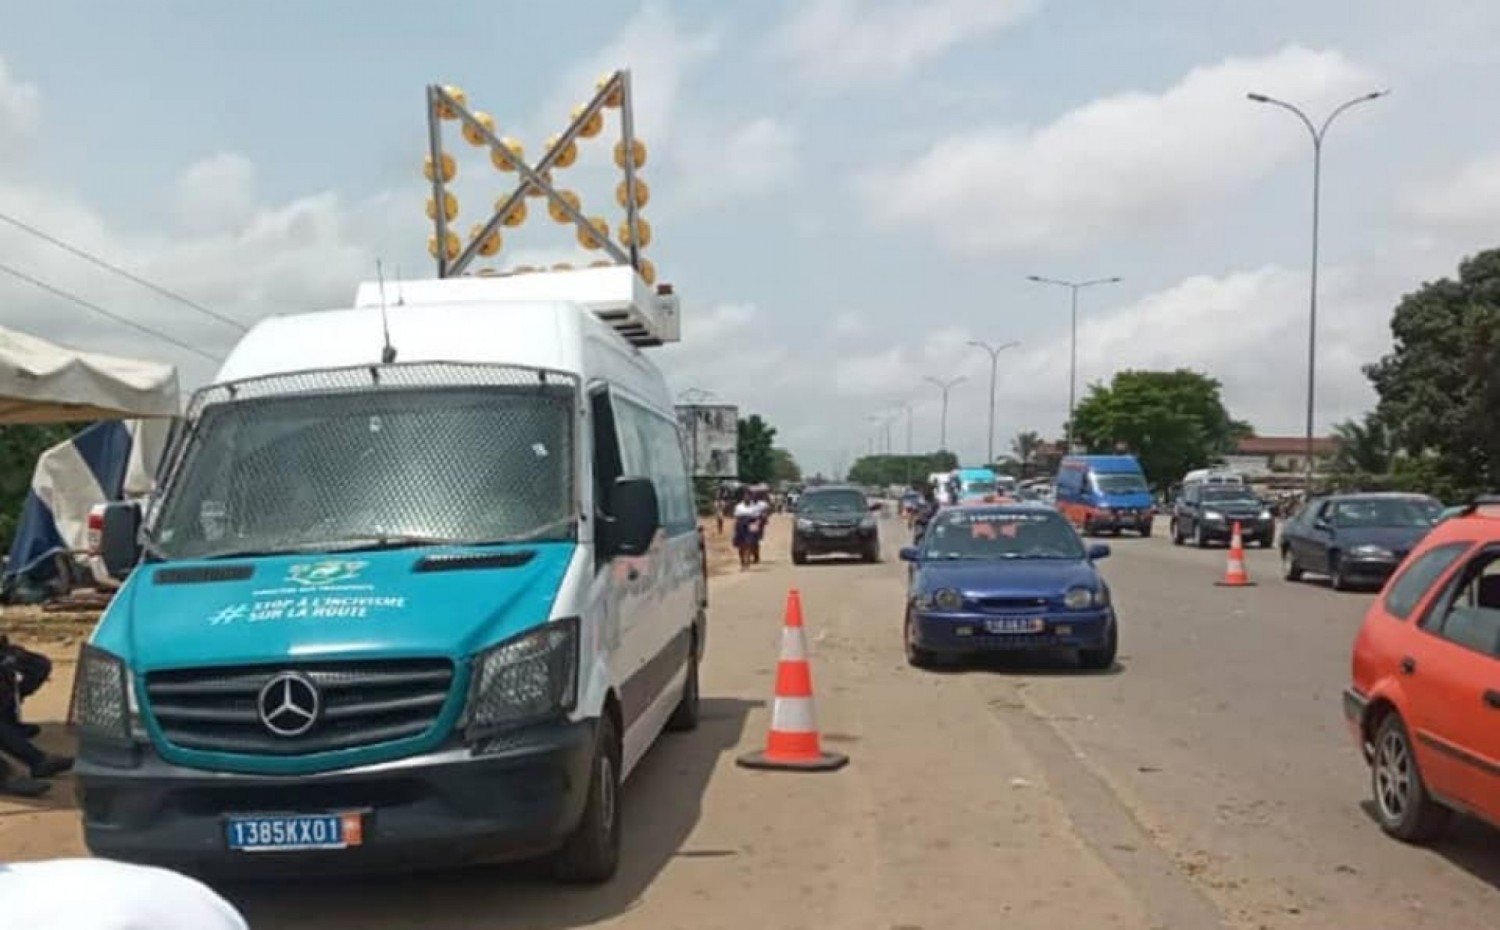 Côte d'Ivoire : Visite technique ou mutation et la carte de transport sont désormais subordonnées au paiement des amendes vidéo-verbalisées ;  827 véhicules flashés en une semaine